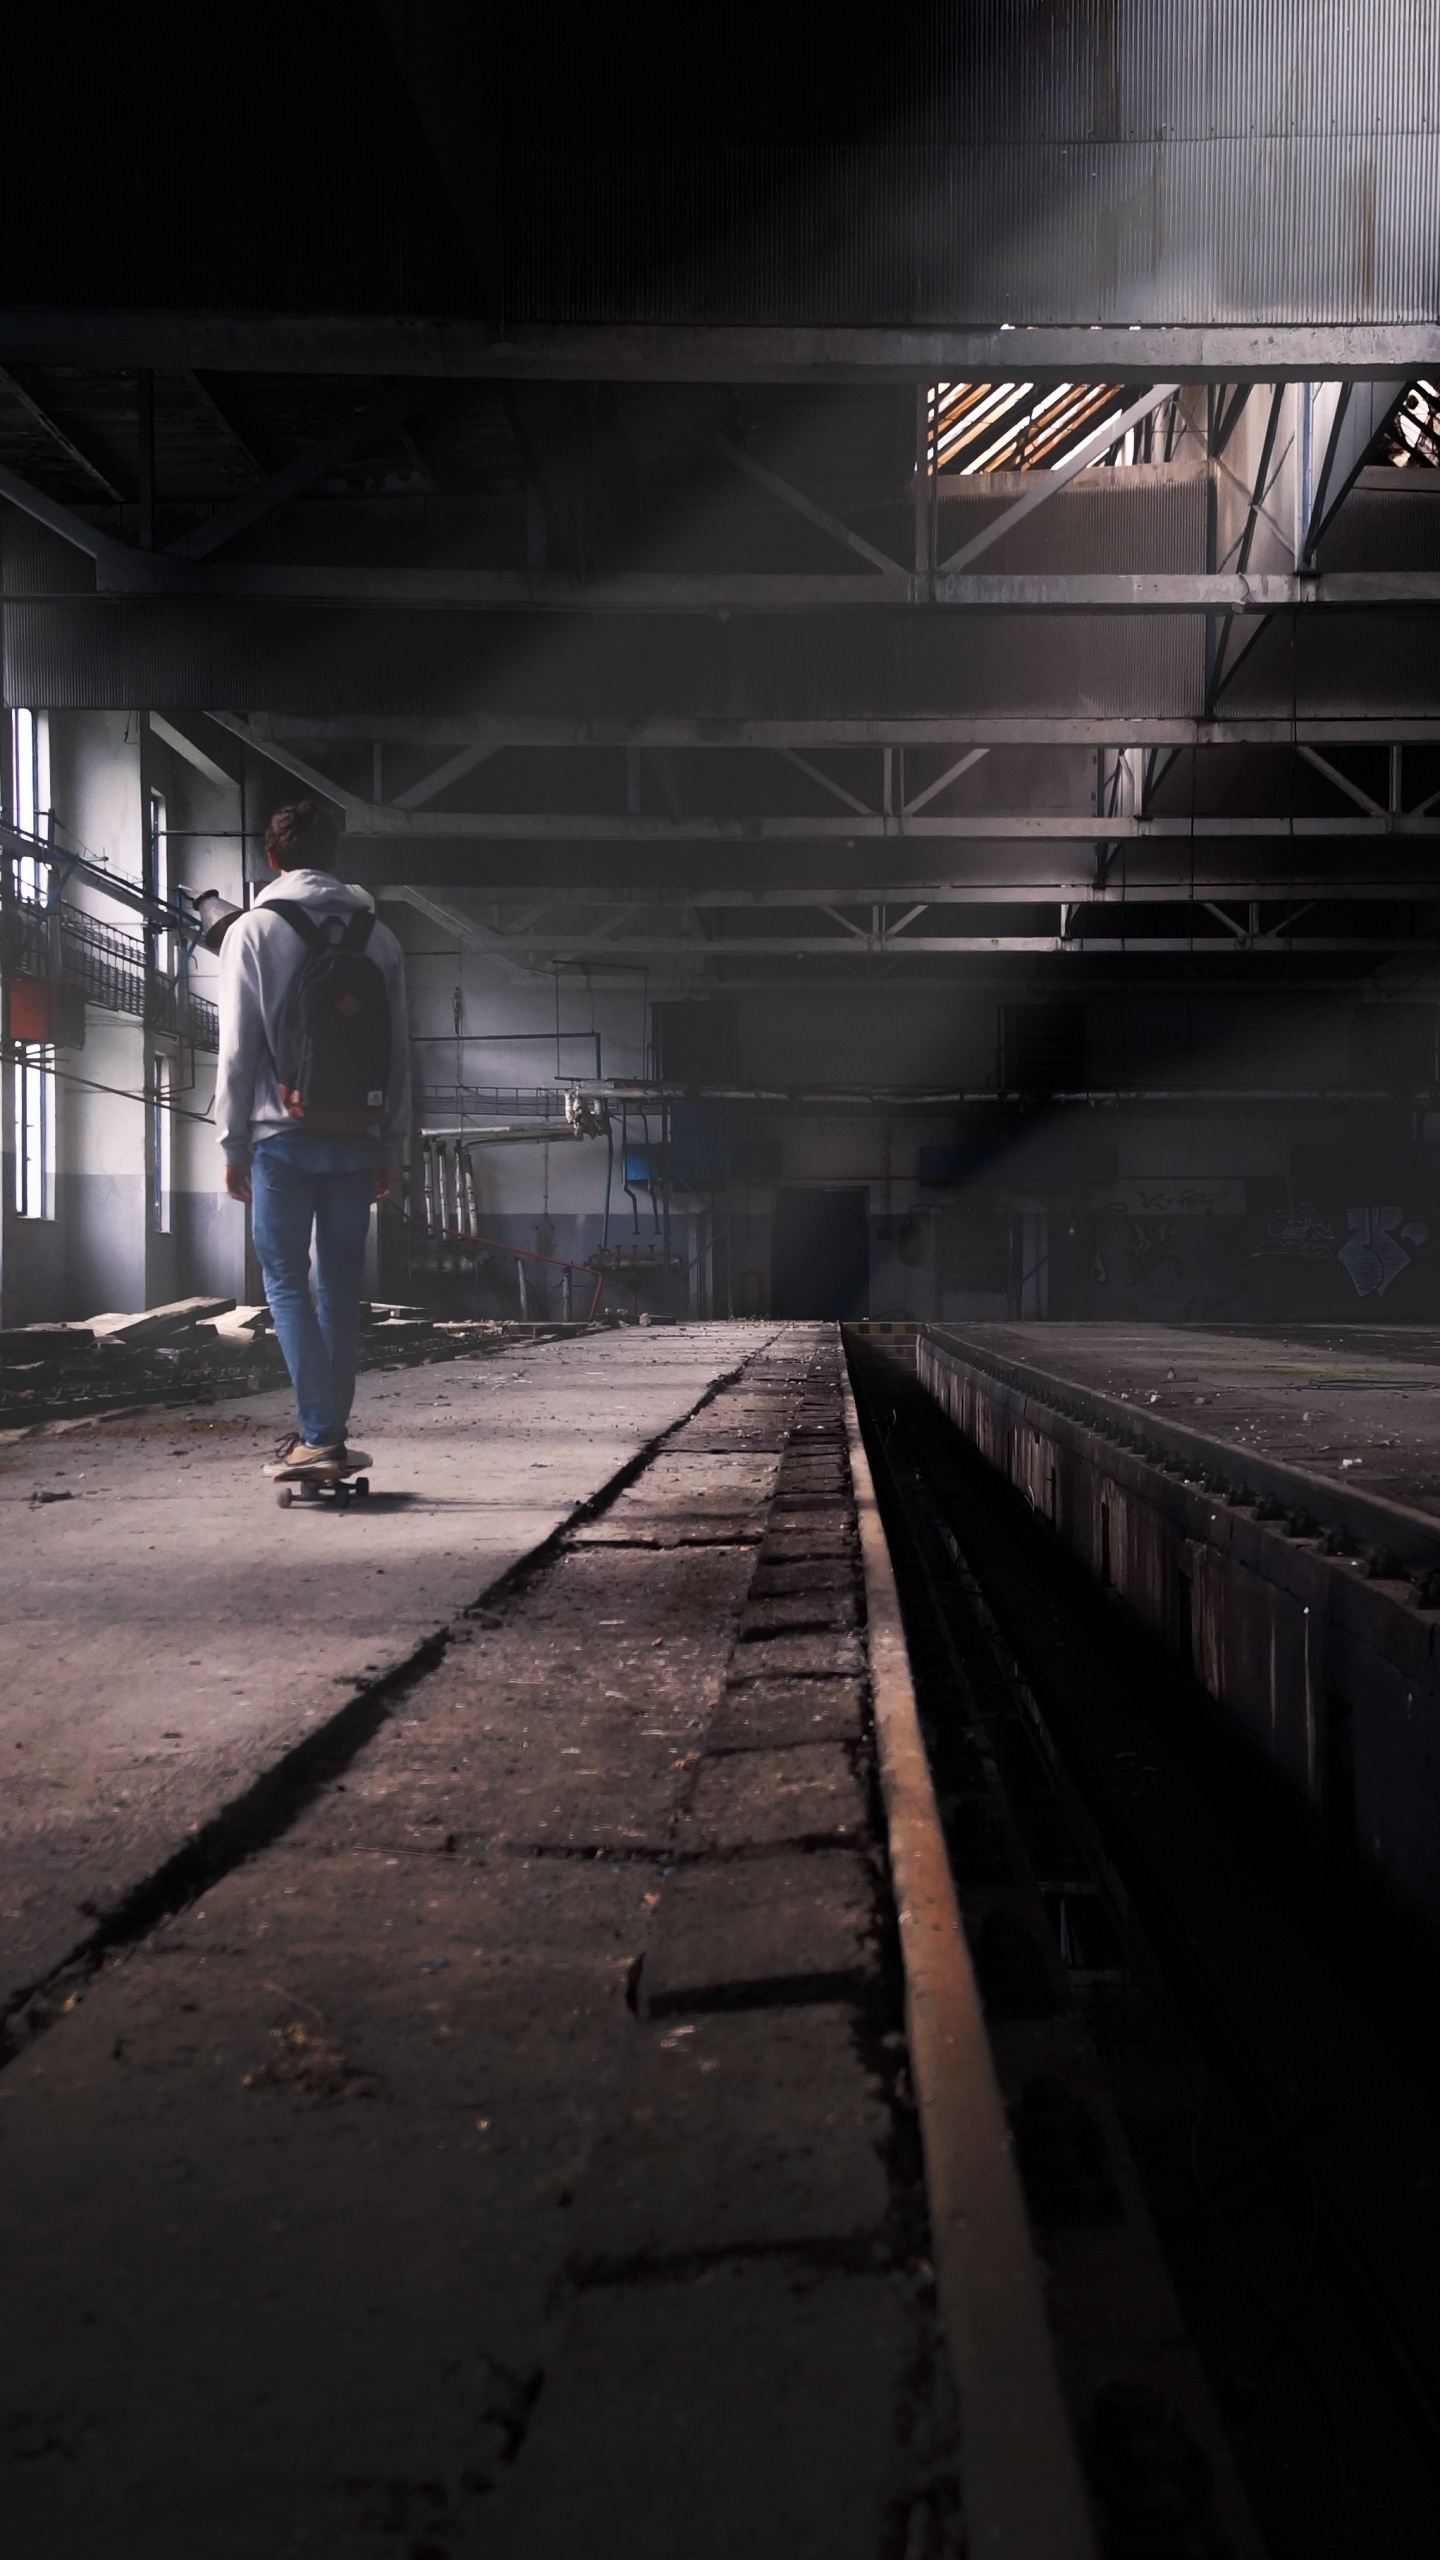 Hombre en Blue Jeans Caminando en la Estación de Tren. Wallpaper in 1440x2560 Resolution